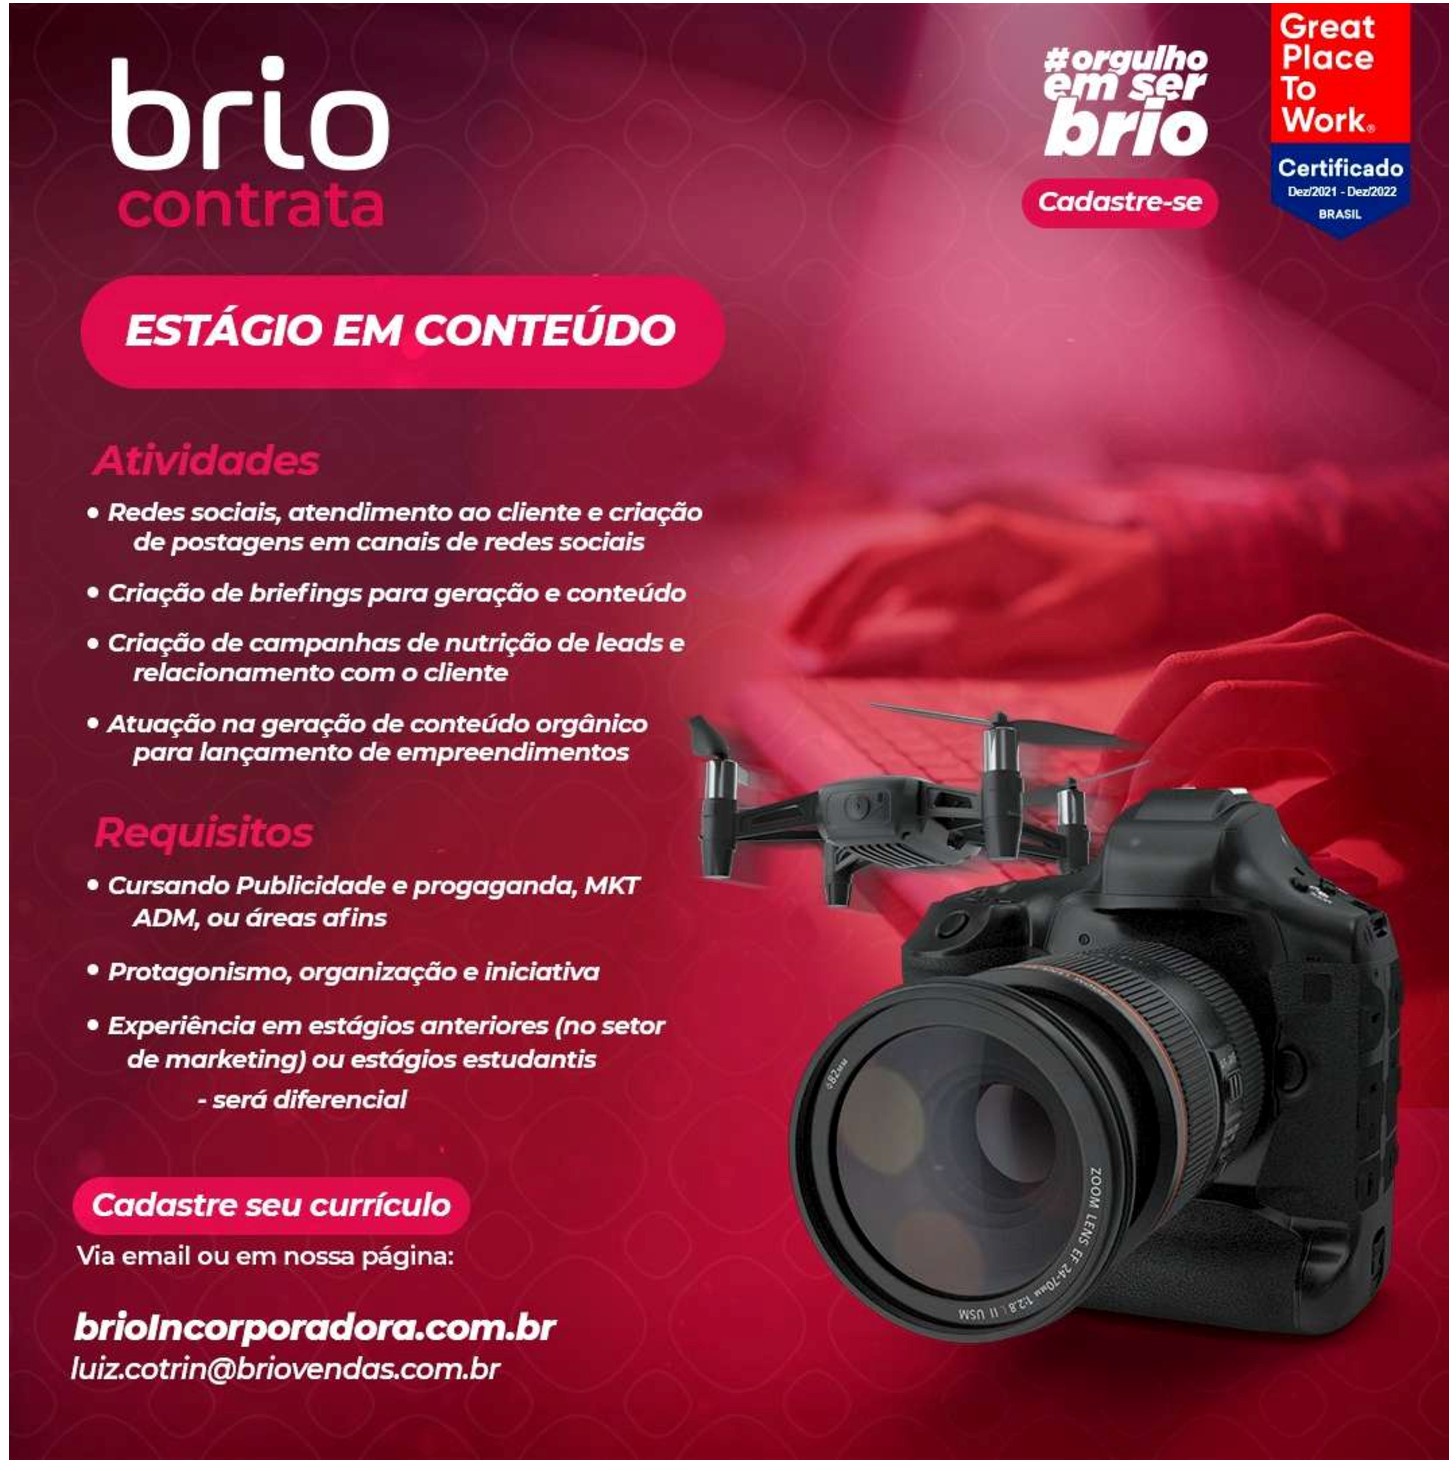 Brio-Incorporadora_Conteúdo_compressed.jpg